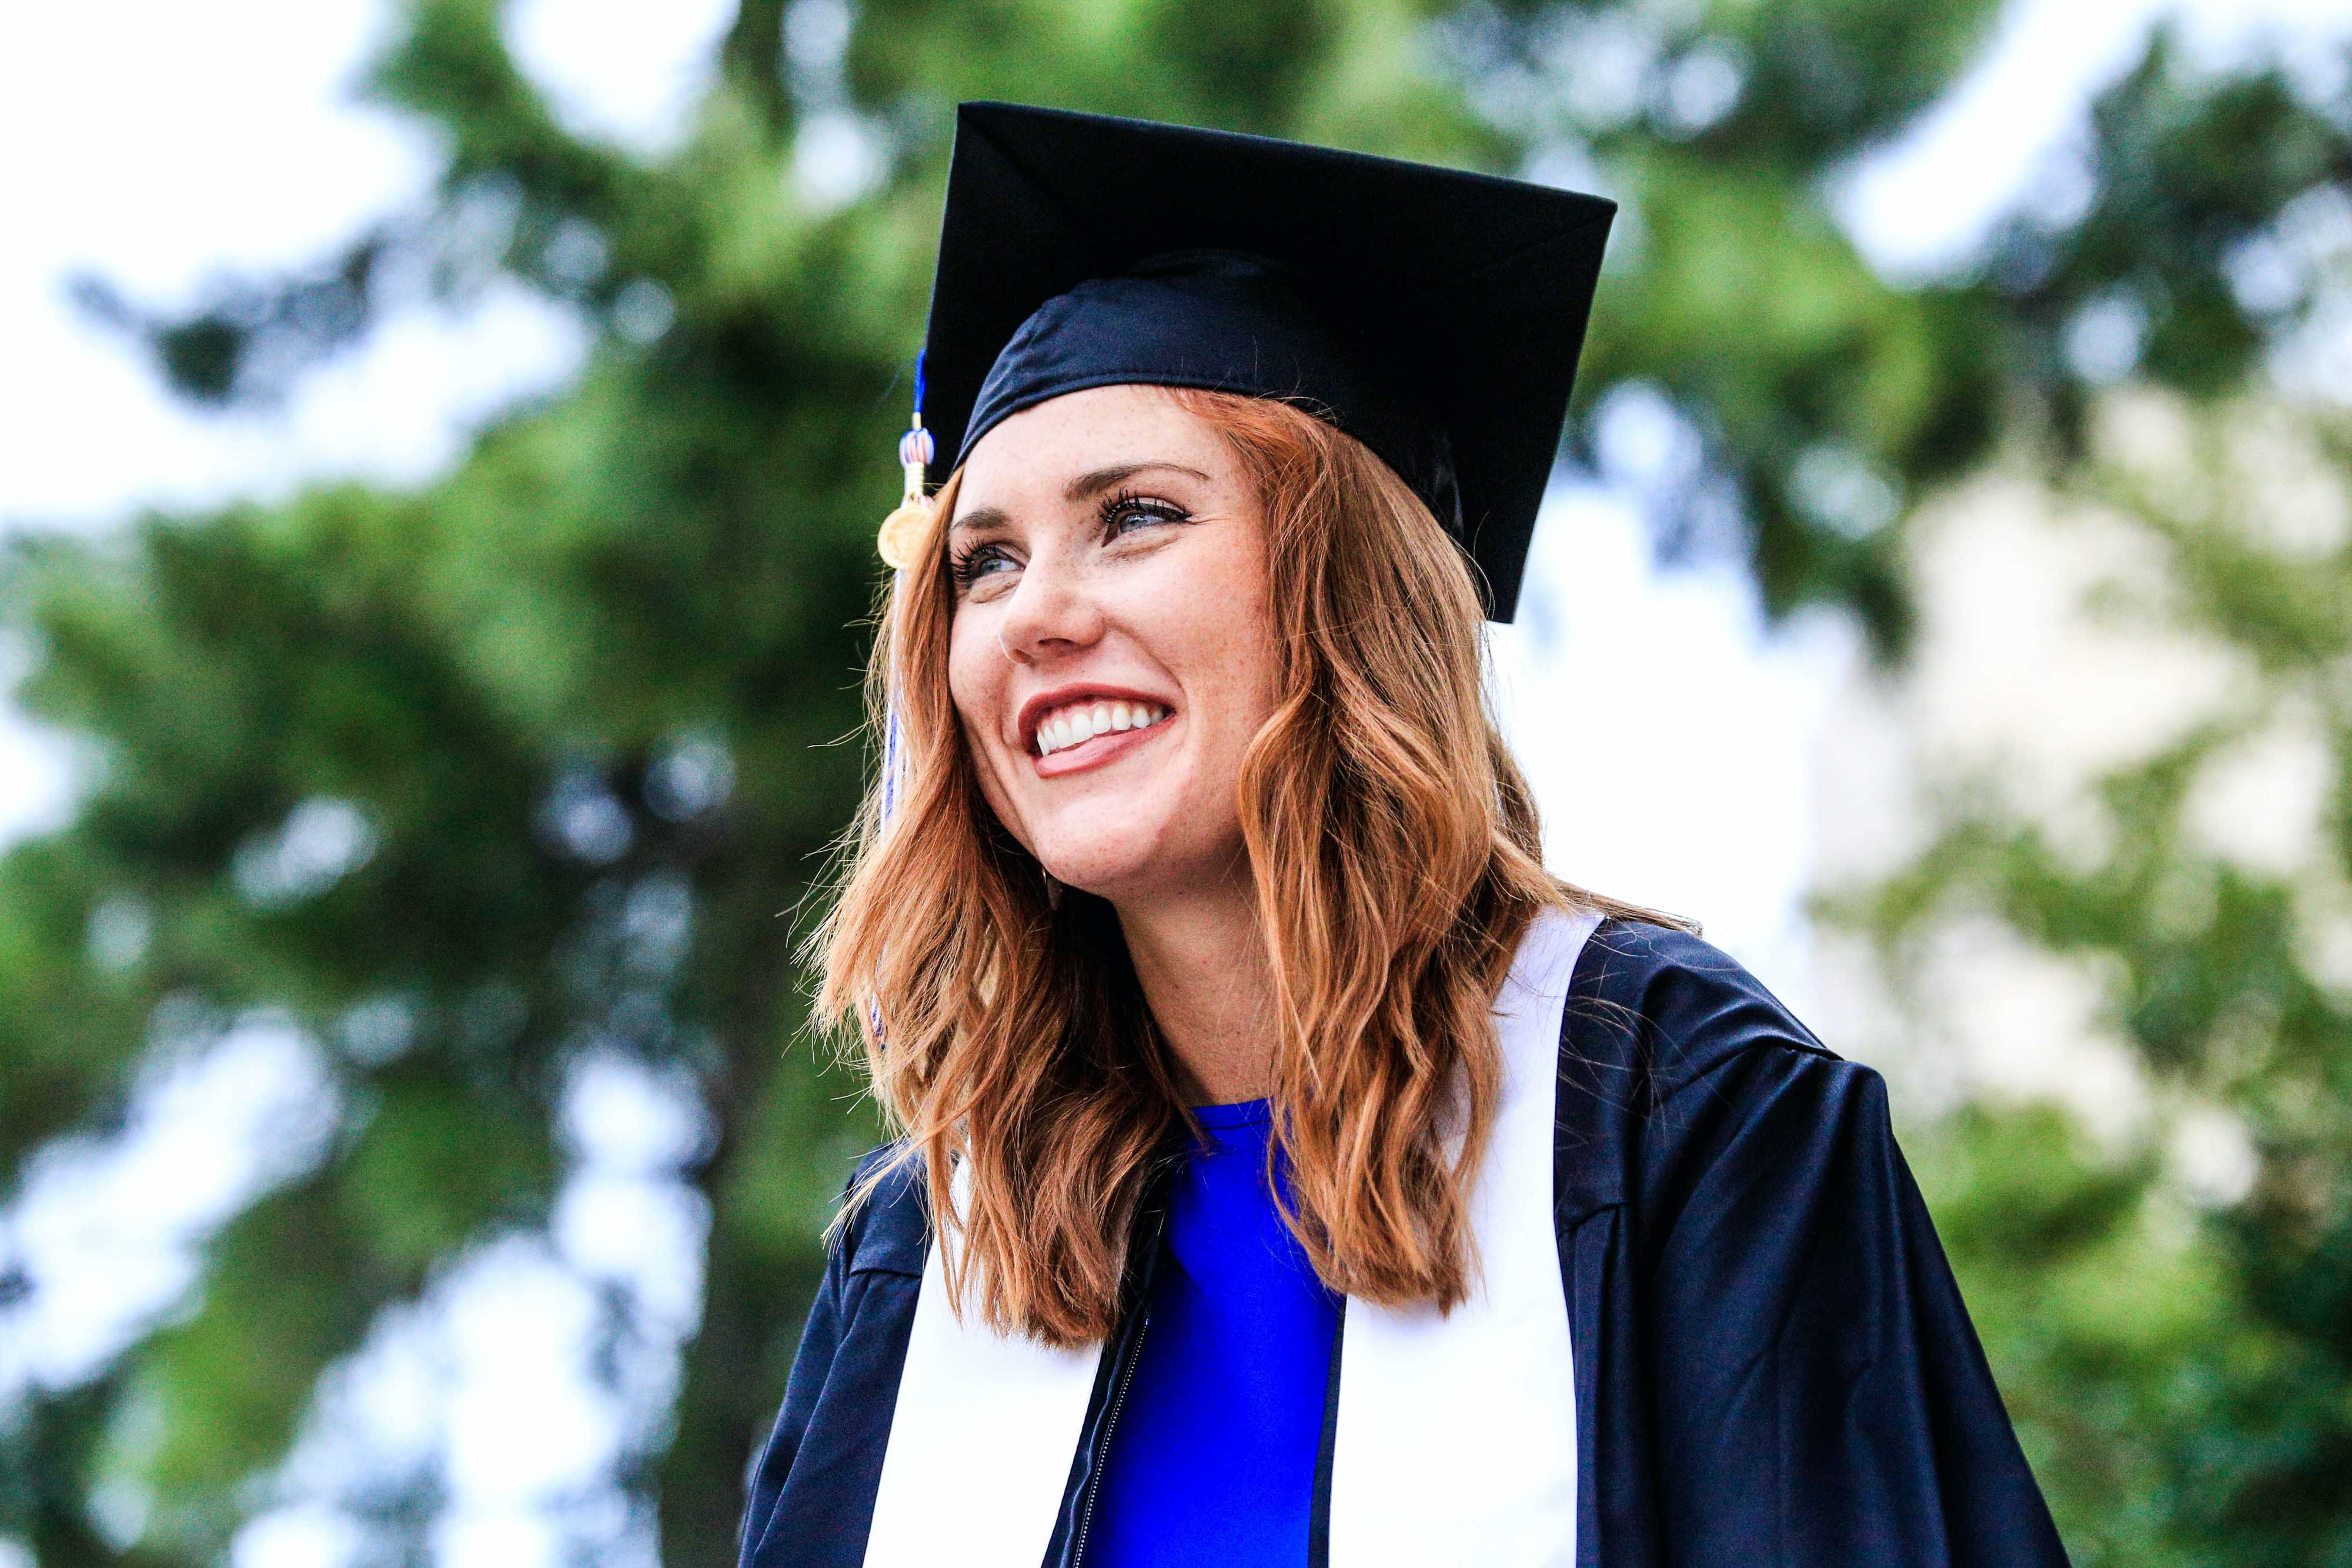 Bilde av ung kvinne i tradisjonell amerikansk graduate-kappe og hatt.